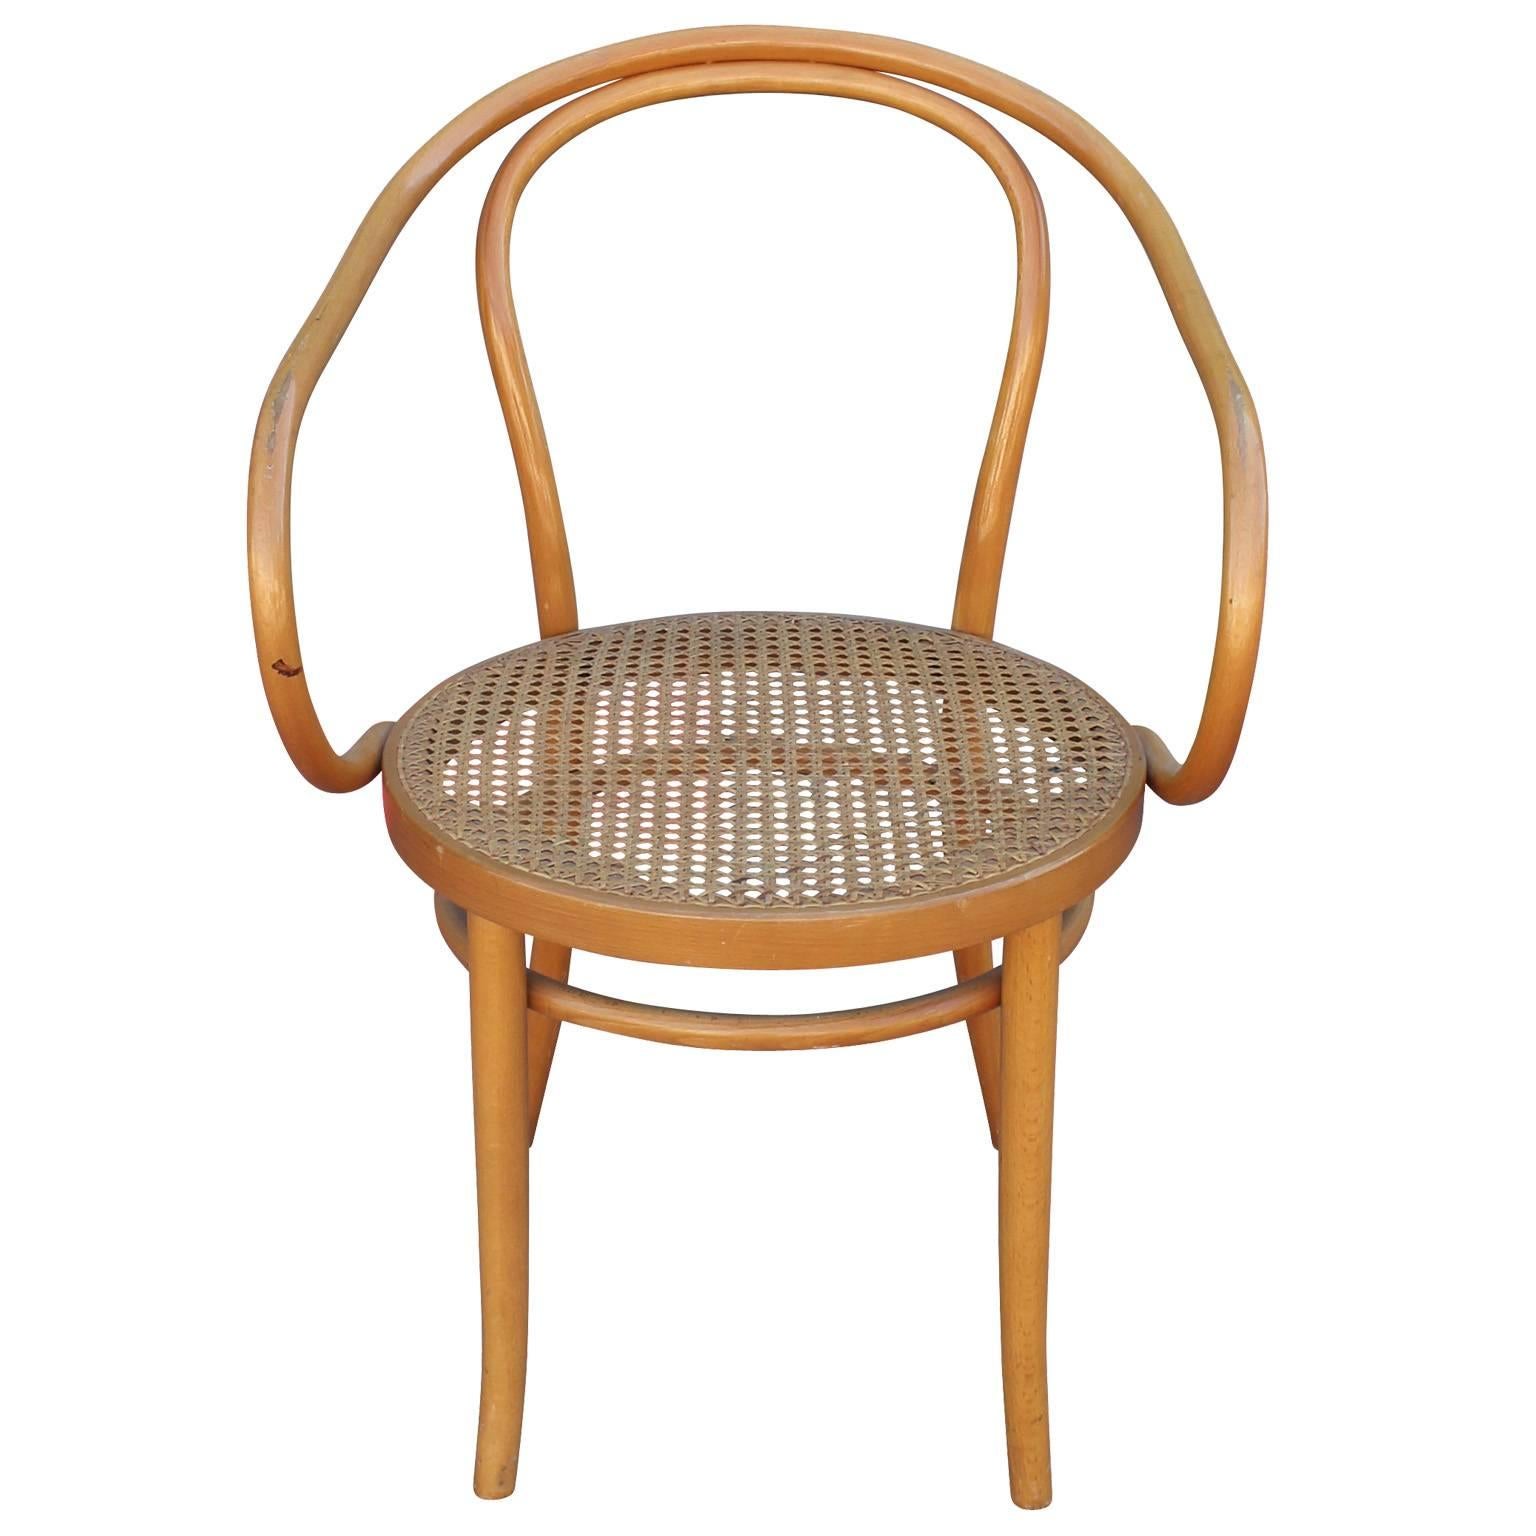 Schöner Satz von 6 skulpturalen Thonet 209 Esszimmerstühlen. Entworfen von Auguste Thonet für Thonet:: hergestellt in Deutschland. Bugholz und Rattan. Die runden Sitze sind mit Schilfrohr bezogen:: das sich in einem ausgezeichneten Zustand befindet.